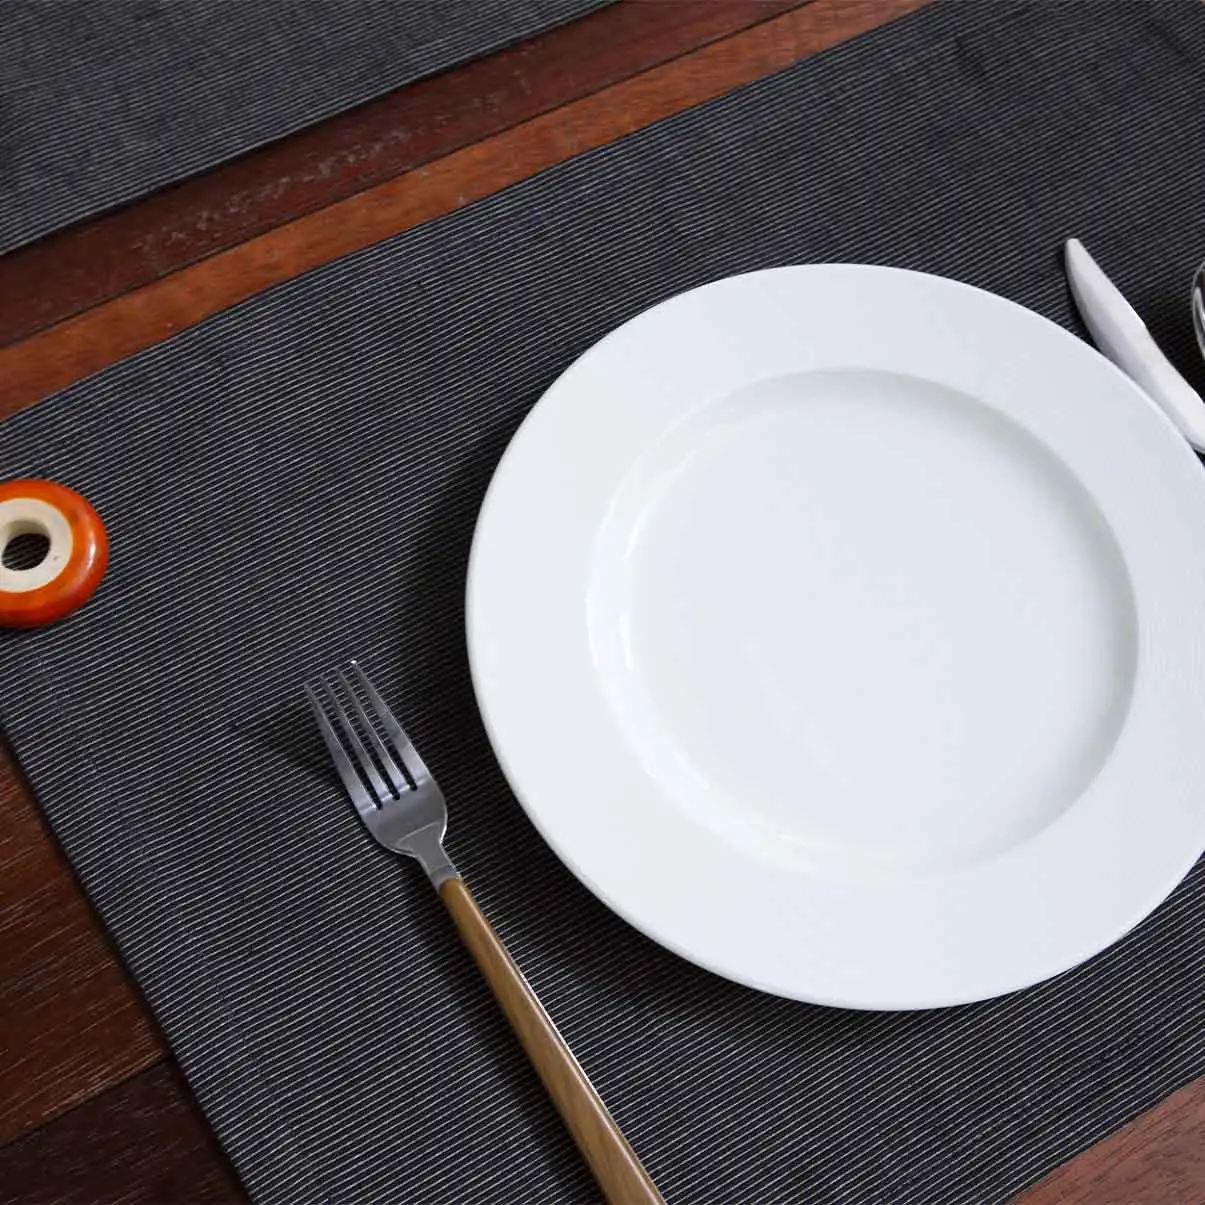 Tapetes de mesa retangulares 100% algodão com nervuras, resistentes ao calor natural, absorvente de água, para mesas de jantar, festas e eventos, reutilizáveis